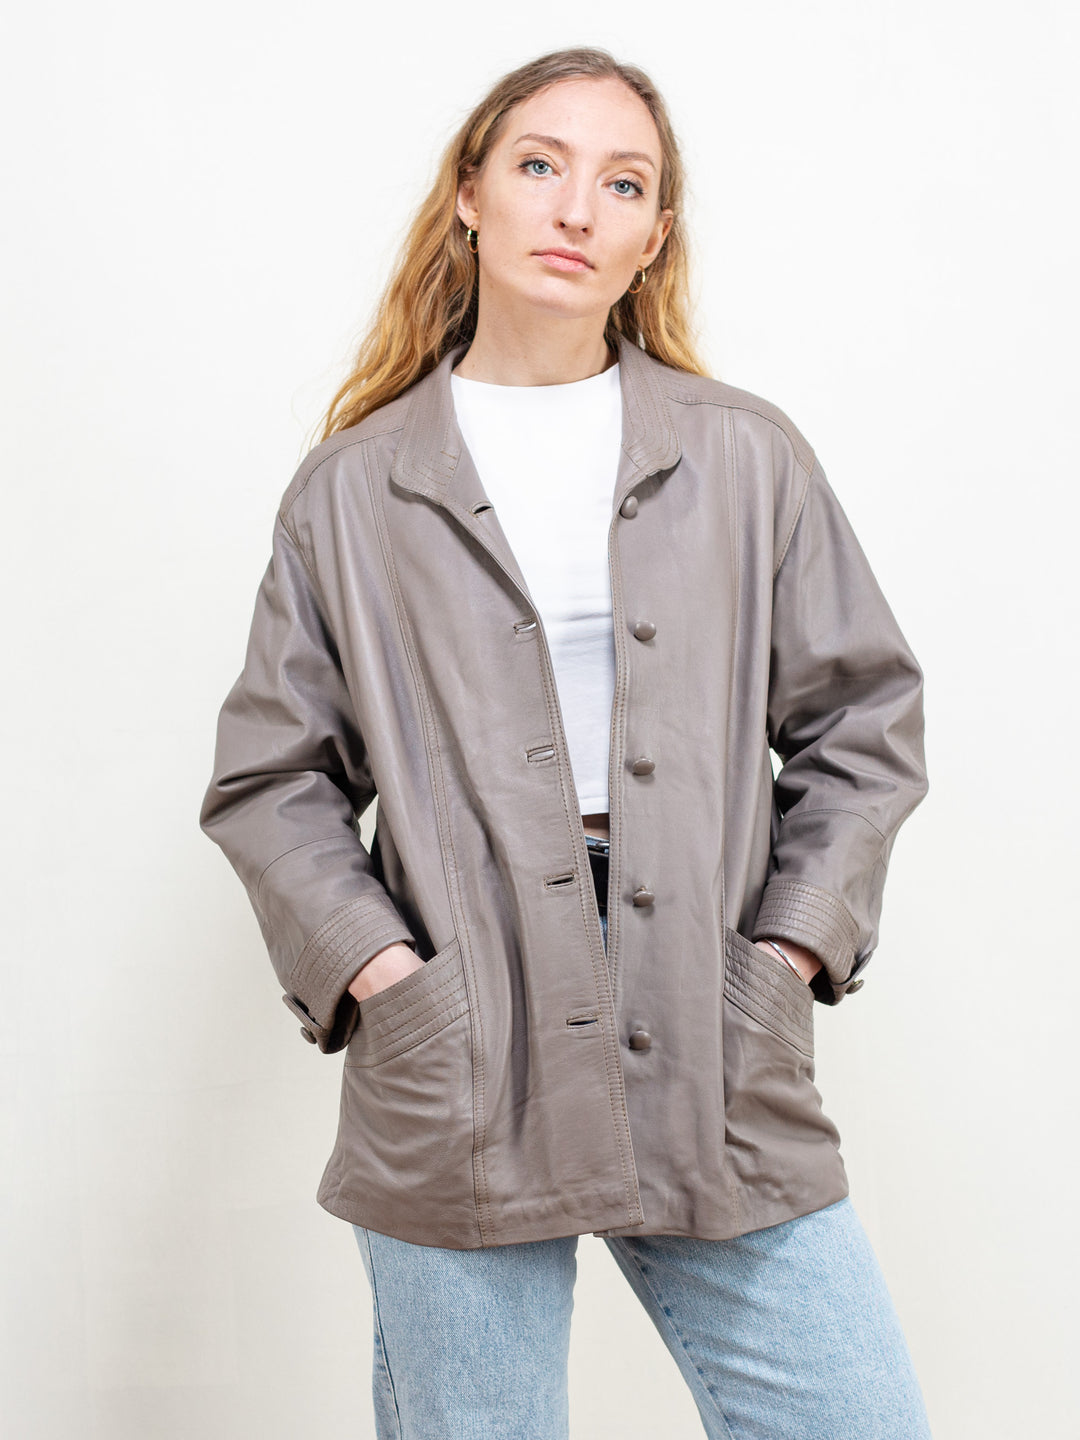 Women Leather Jacket vintage taupe leather jacket simple minimalistic leather jacket 70s vintage clothing leather blazer jacket size large